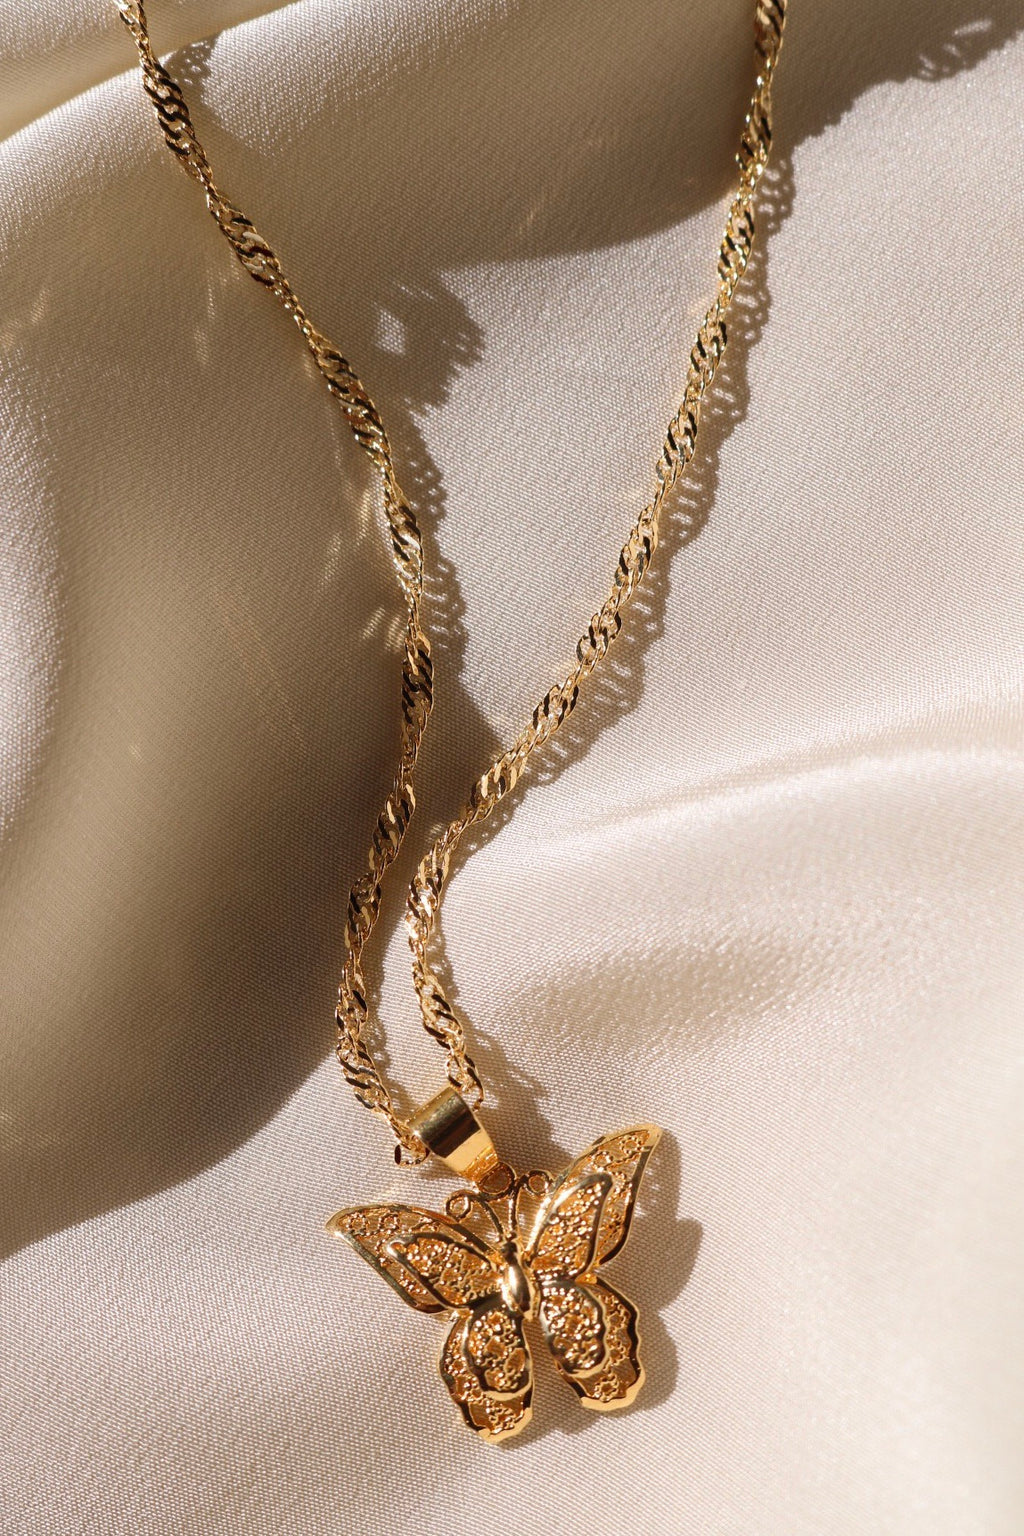 Gold Butterfly Necklace – Kimiya